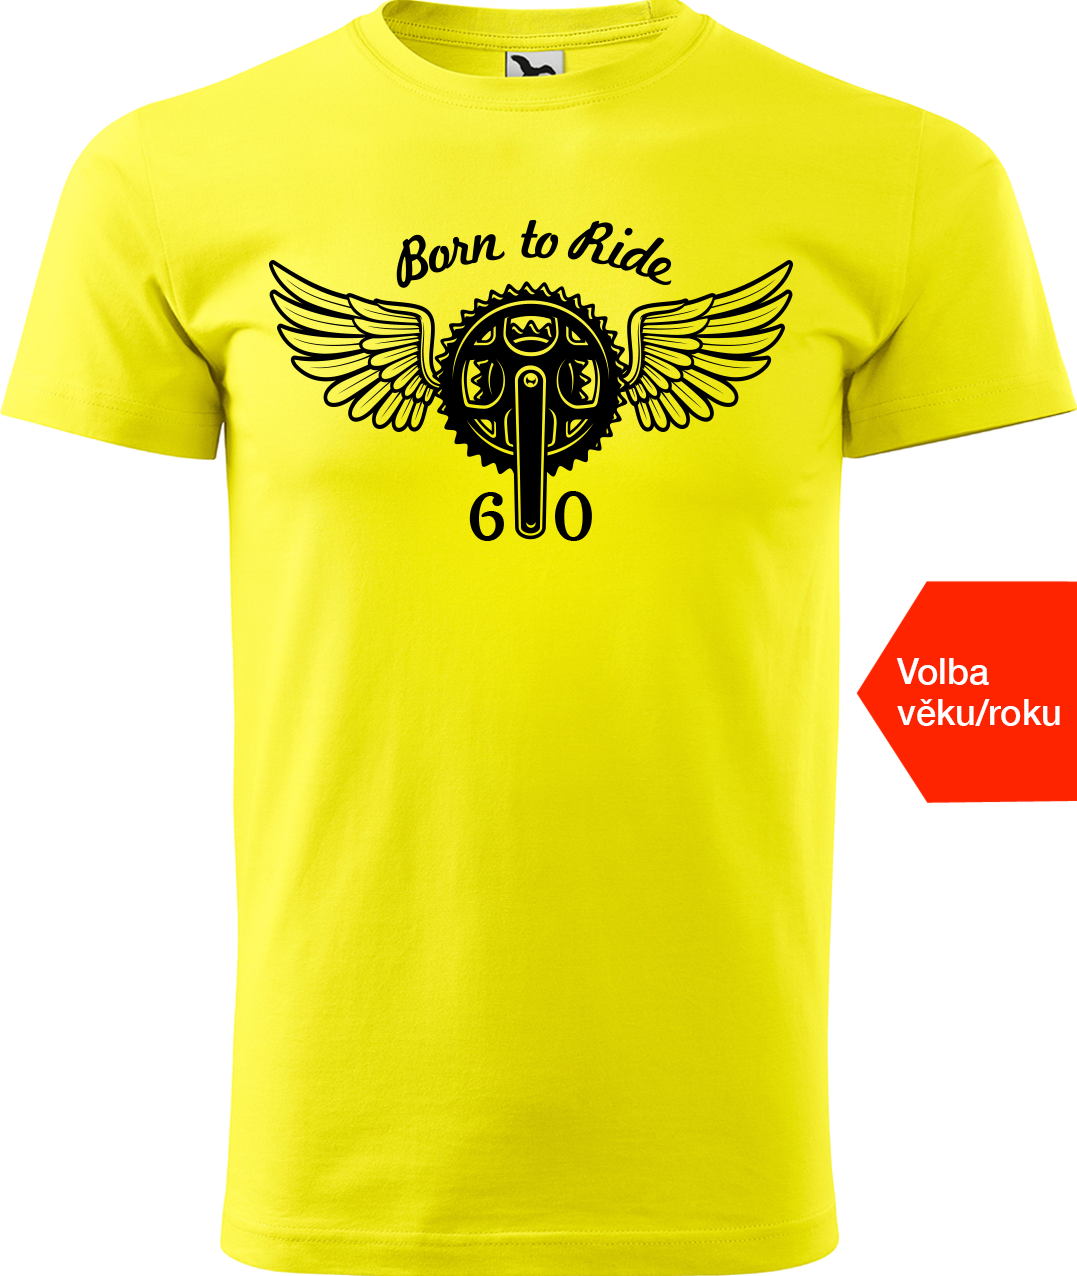 Pánské tričko pro cyklistu s rokem narození - Born to Ride (kolo) Velikost: L, Barva: Žlutá (04)